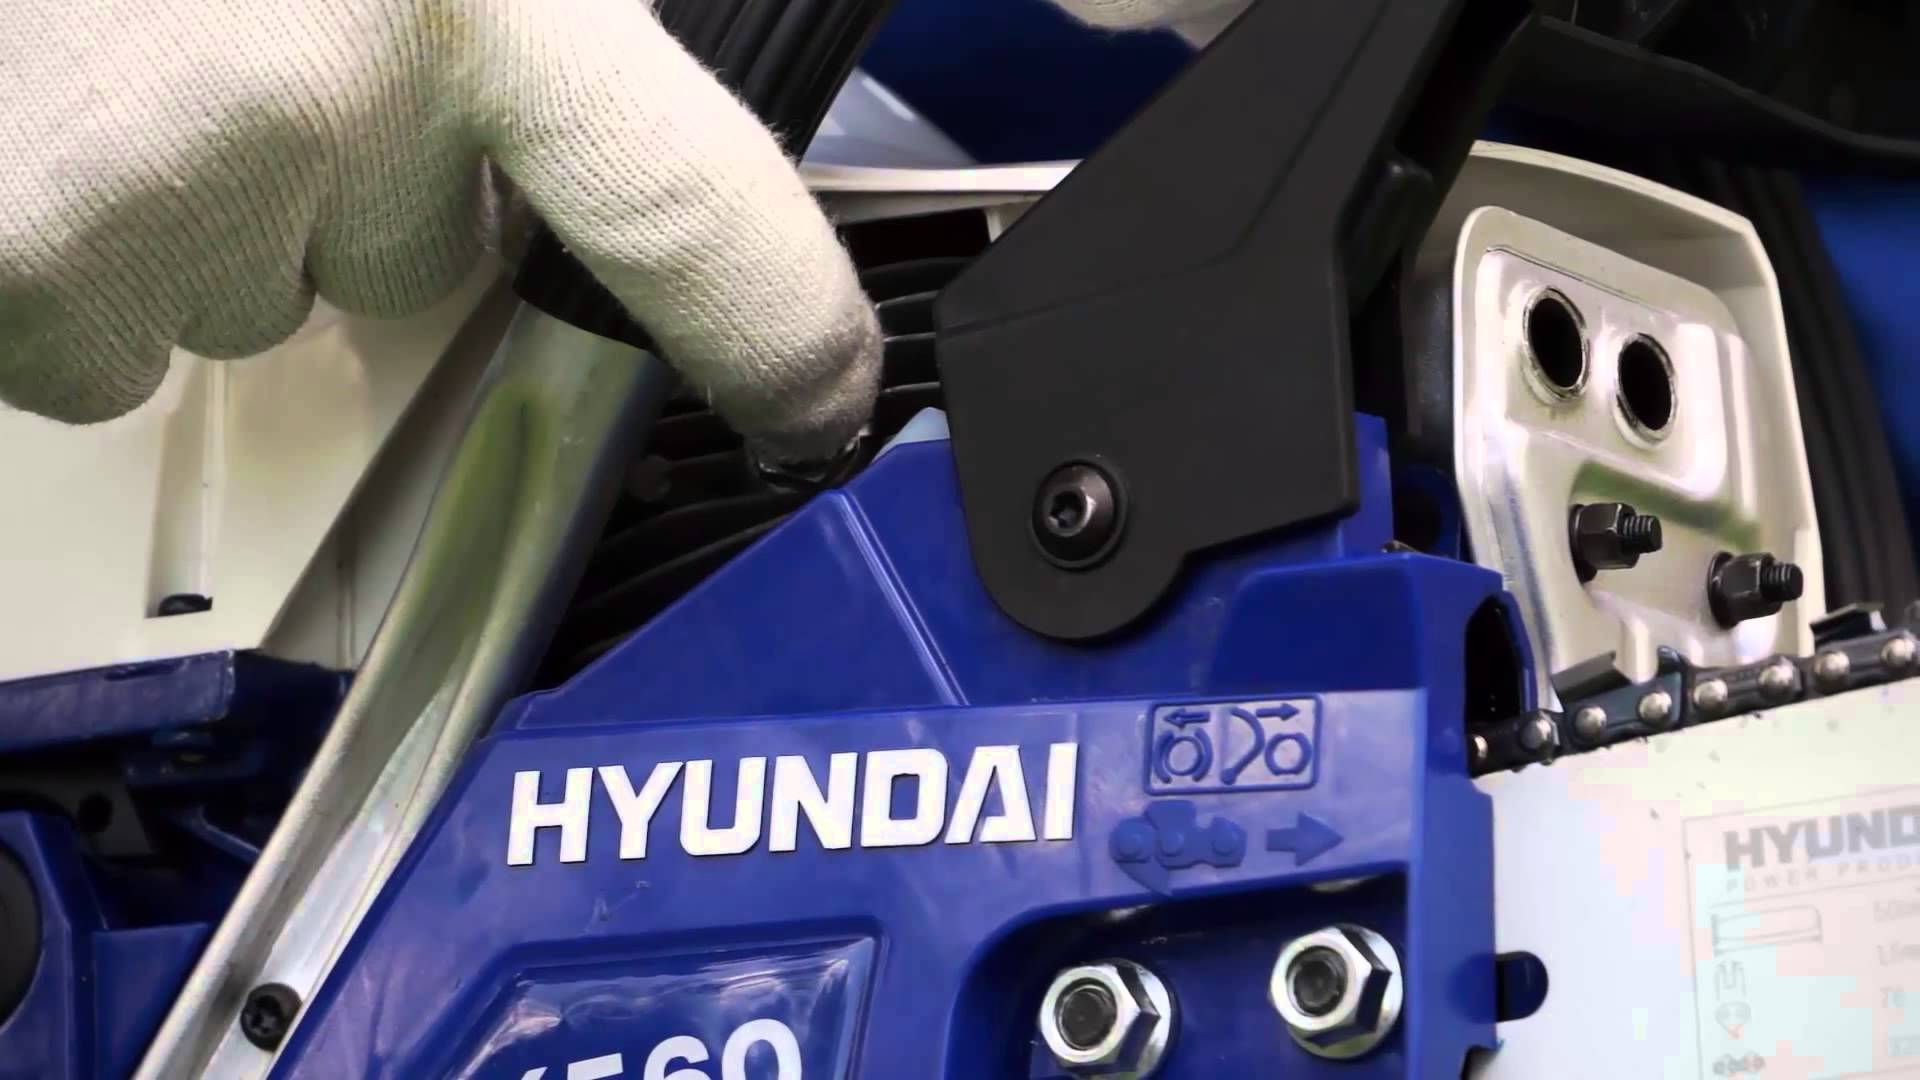 Hyundai Kettensäge Test und Erfahrungen: Ein umfassender Überblick über den Modellreihen von Hyundai Kettensägen